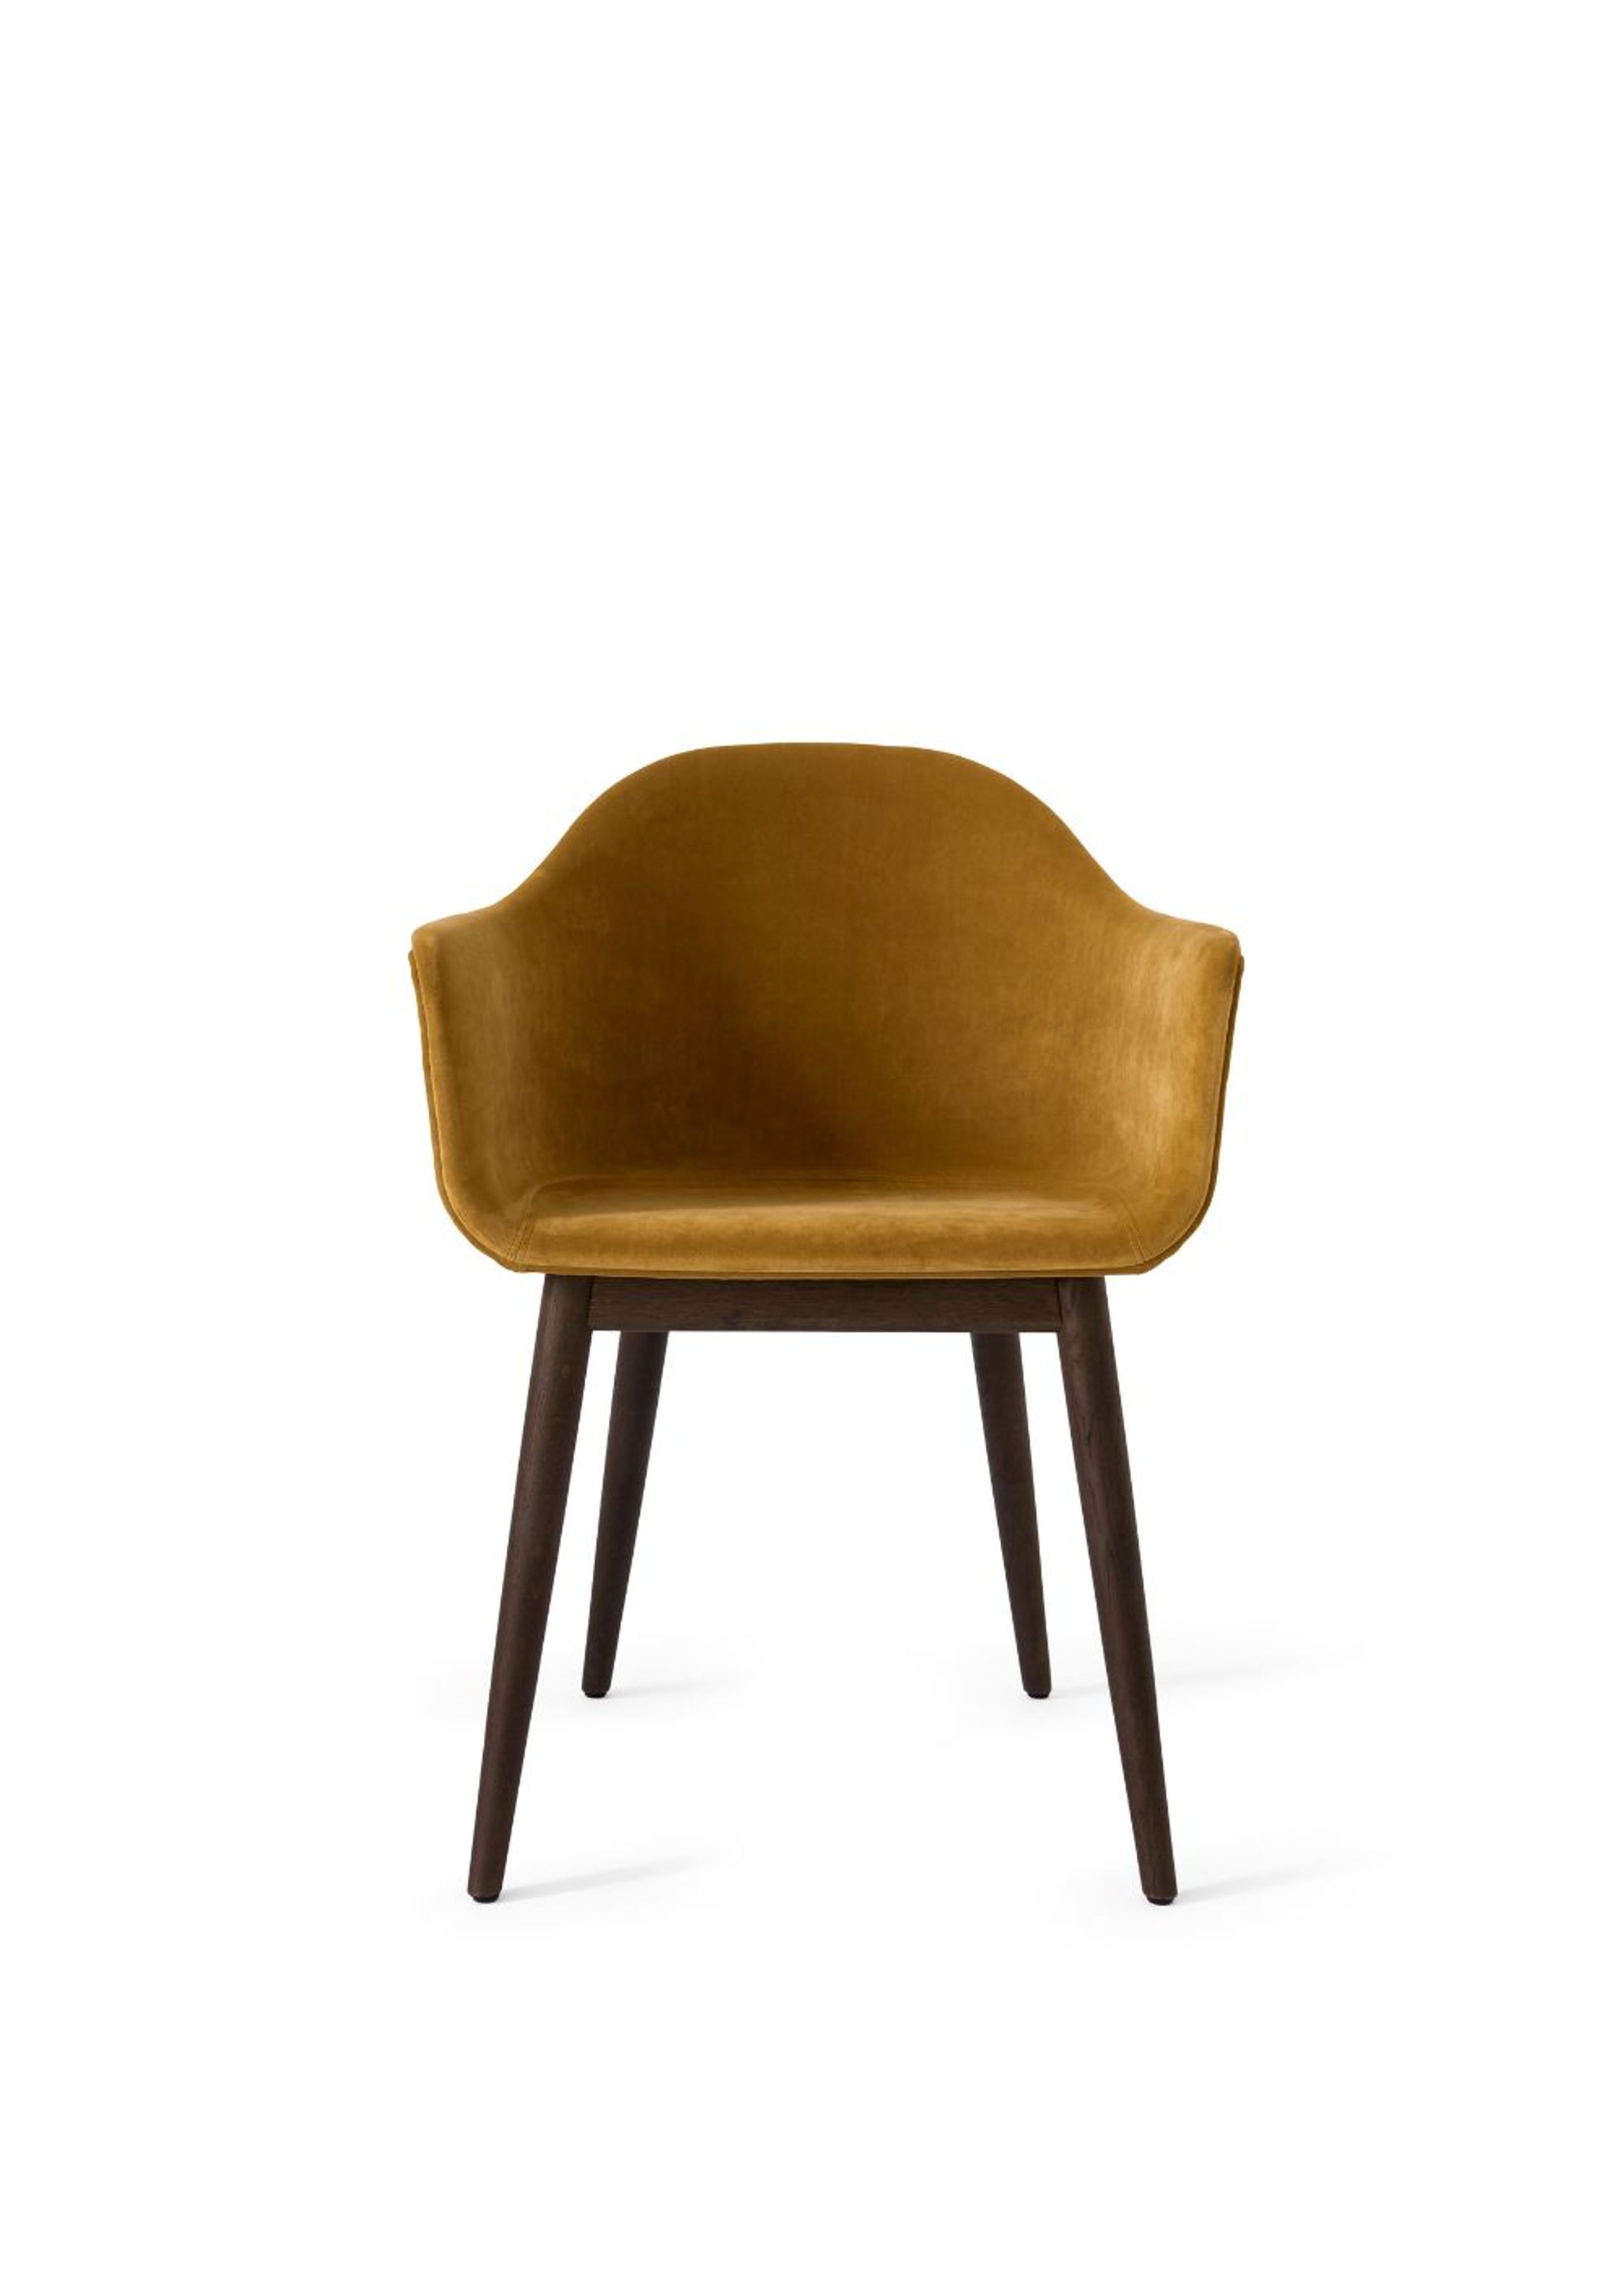 MENU - Spisebordsstol - Harbour Dining Chair / Dark Stained Oak Base - Upholstery: City Velvet CA 7832/060